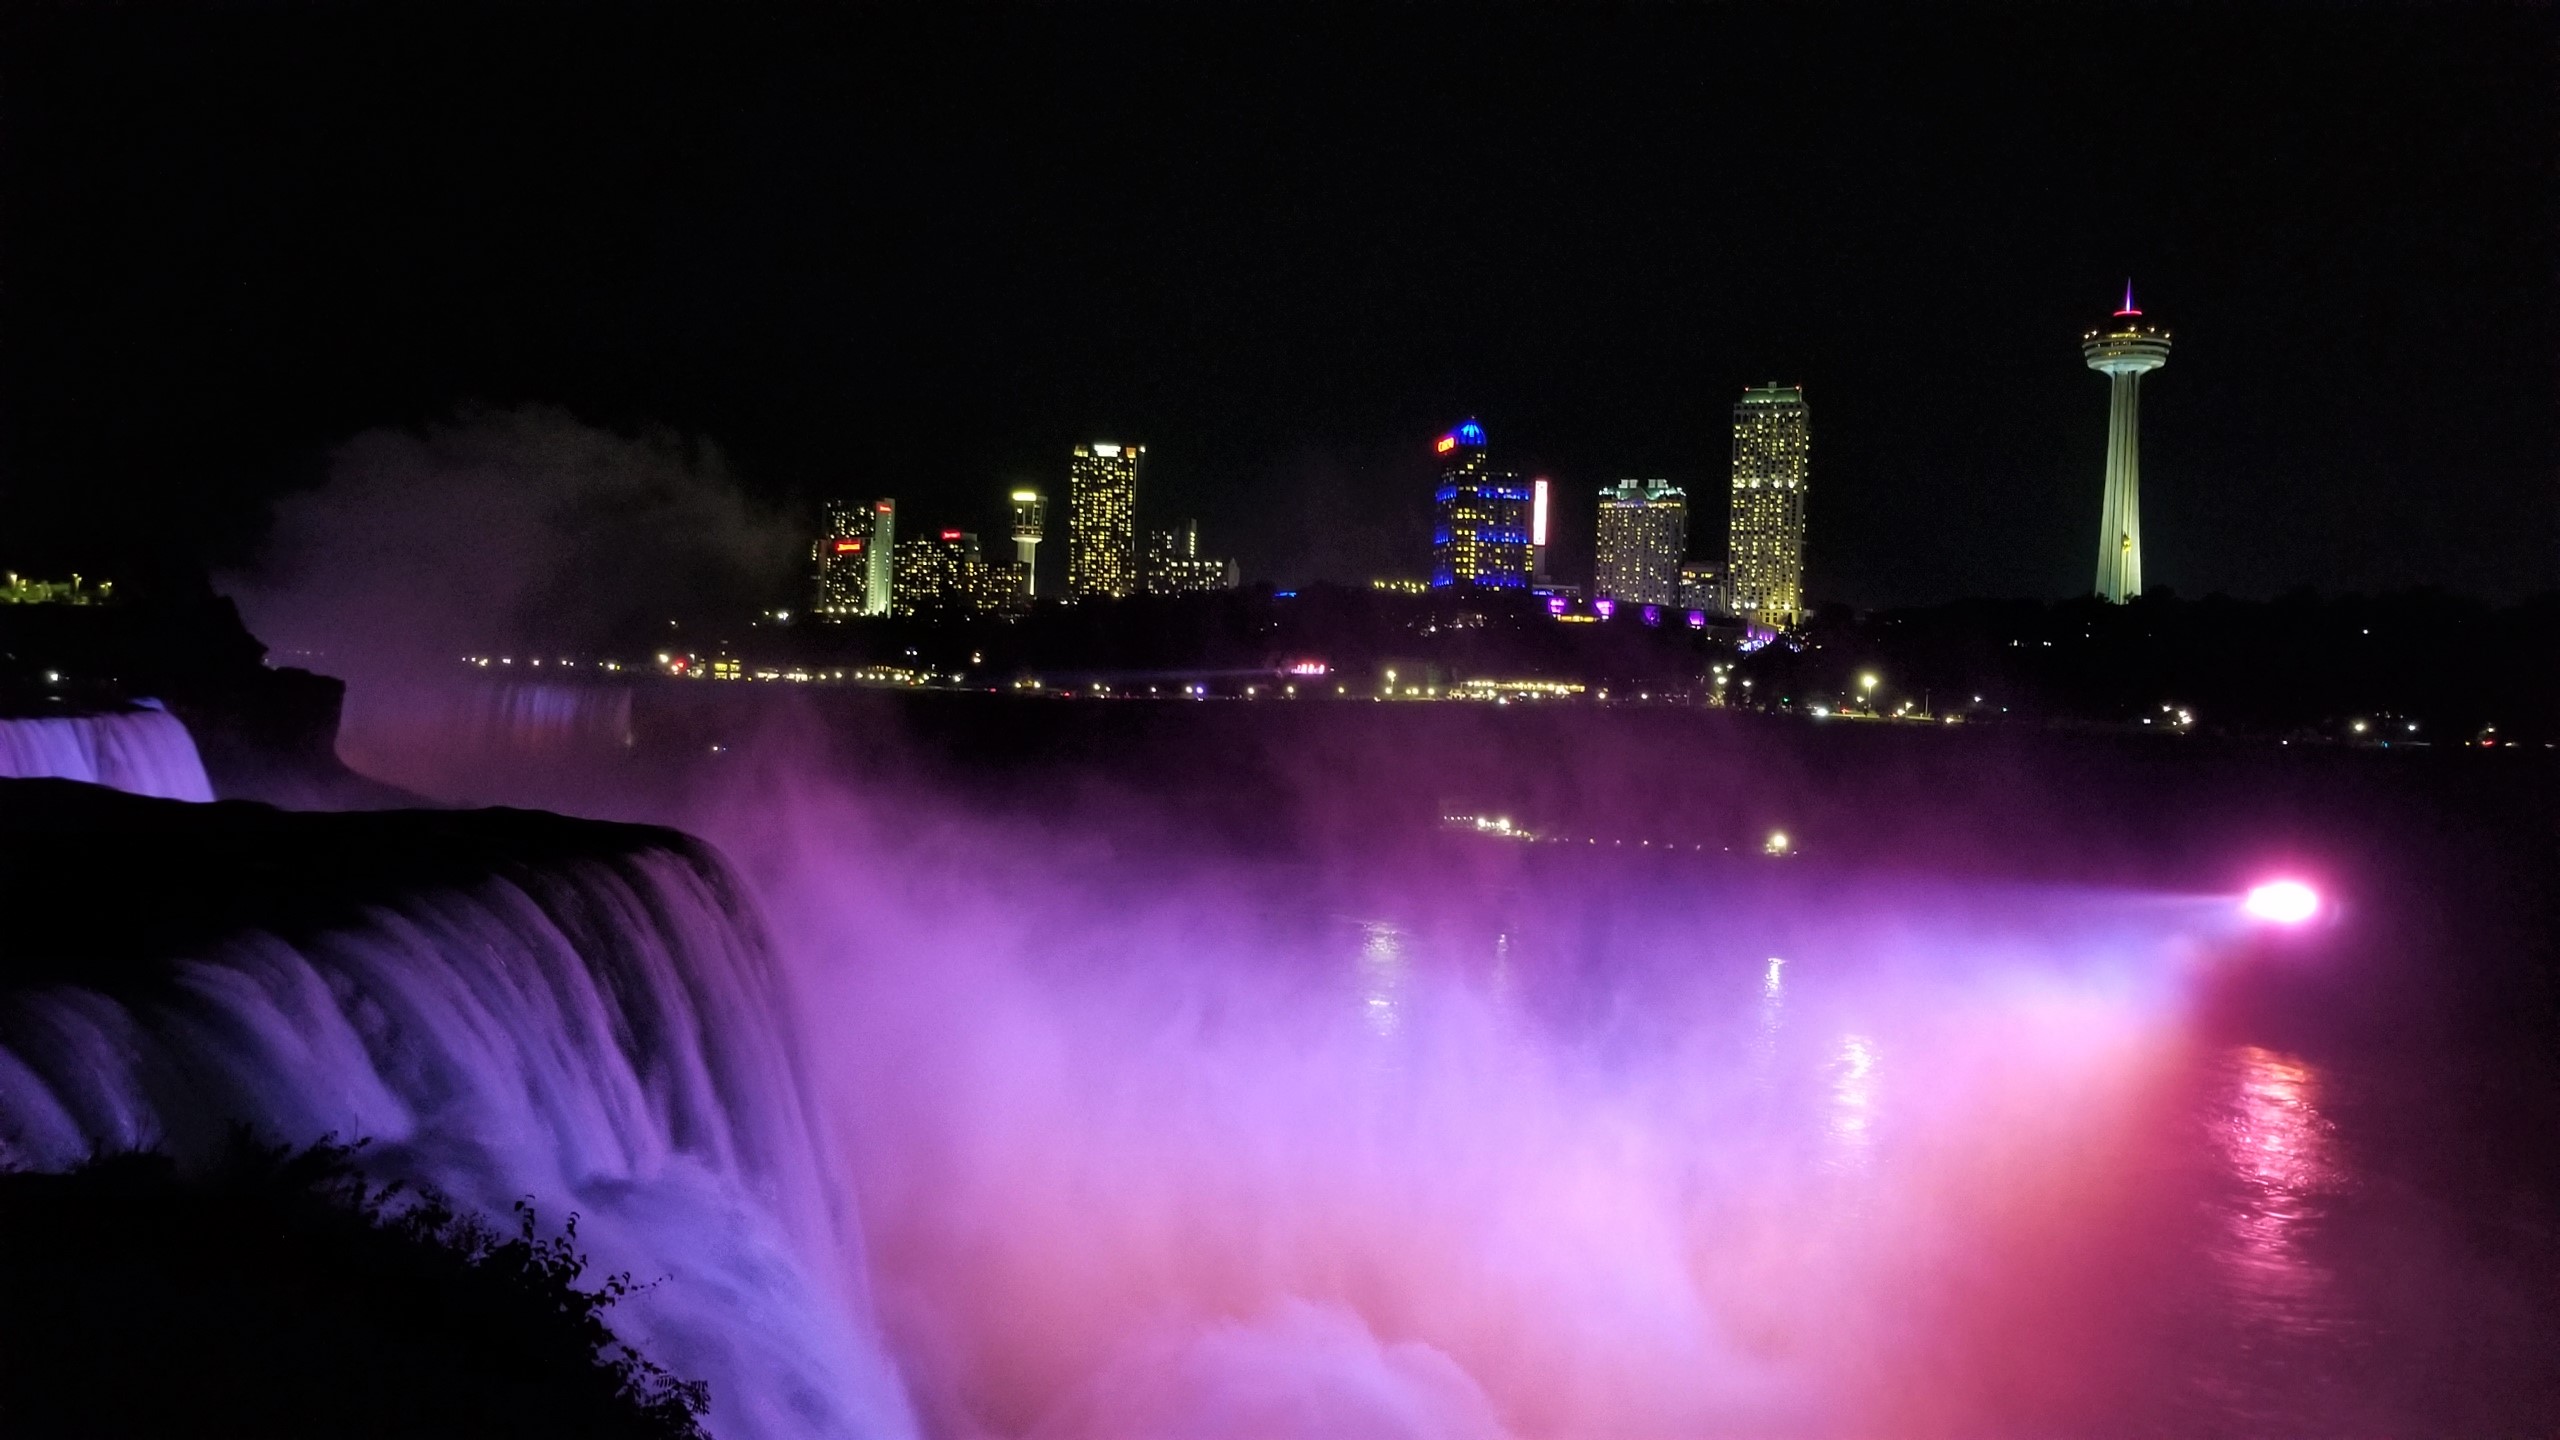 One day in Niagara Falls, New York